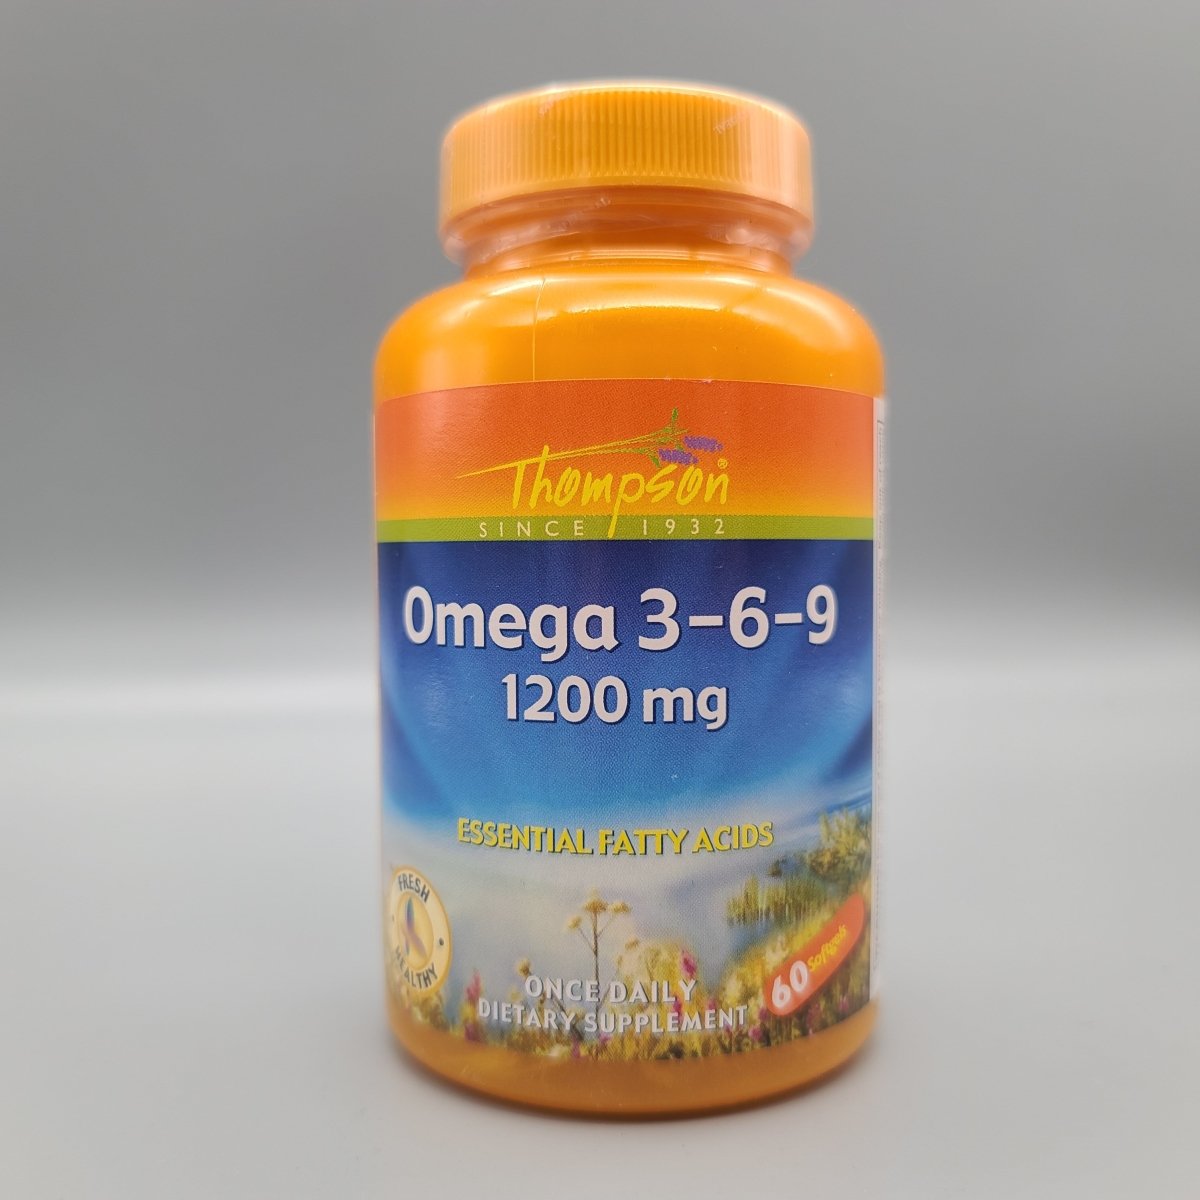 Omega 3 6 9 - 60 Softgel - 1200mg